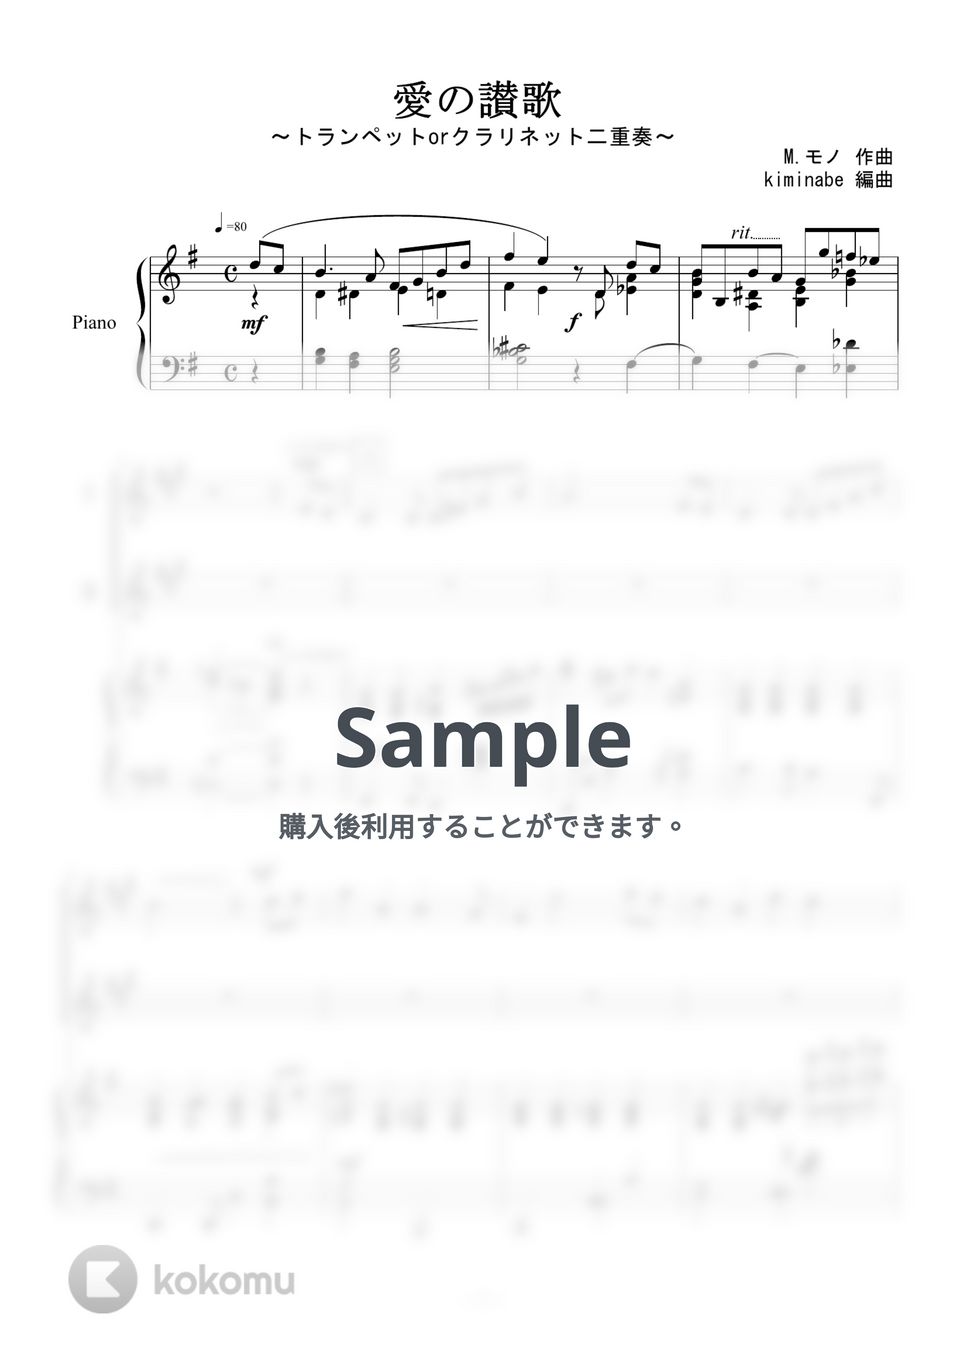 越路吹雪 - 愛の讃歌 (トランペットorクラリネット二重奏) by kiminabe